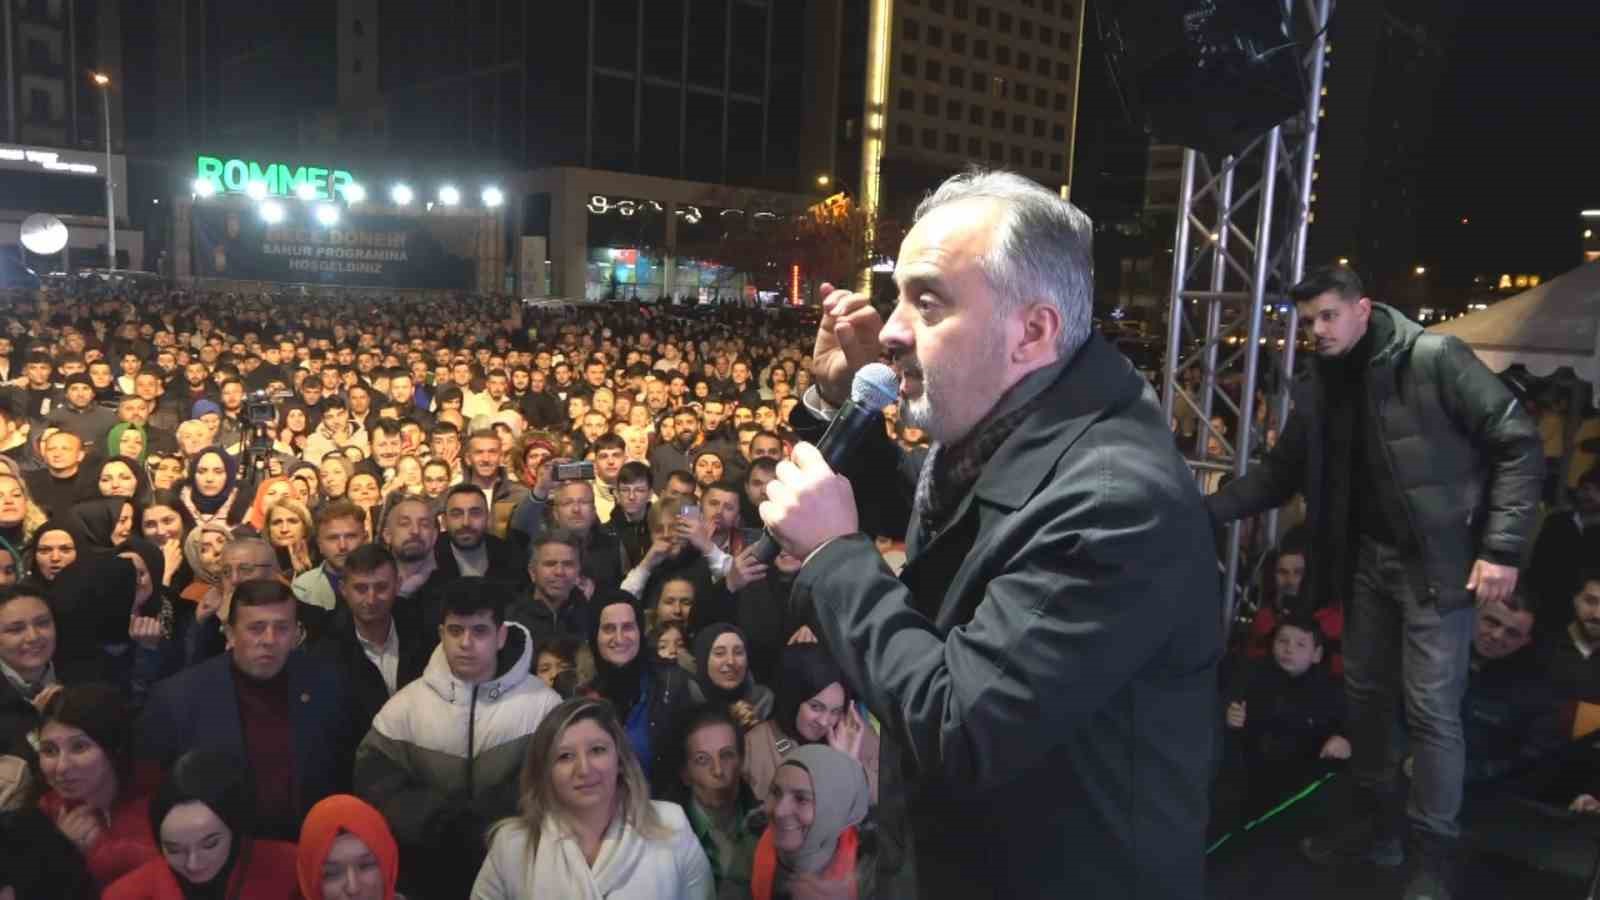 Bursa Milletvekili Varank, “CHP’nin Büyükşehir adayına kaçak yapıdan dolayı kendi partisi 44 milyon ceza kesti”